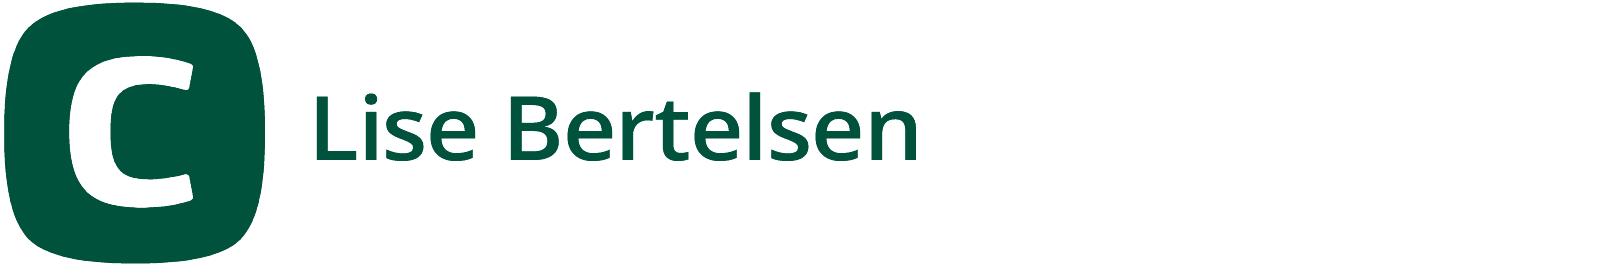 Logo - Lise Bertelsen